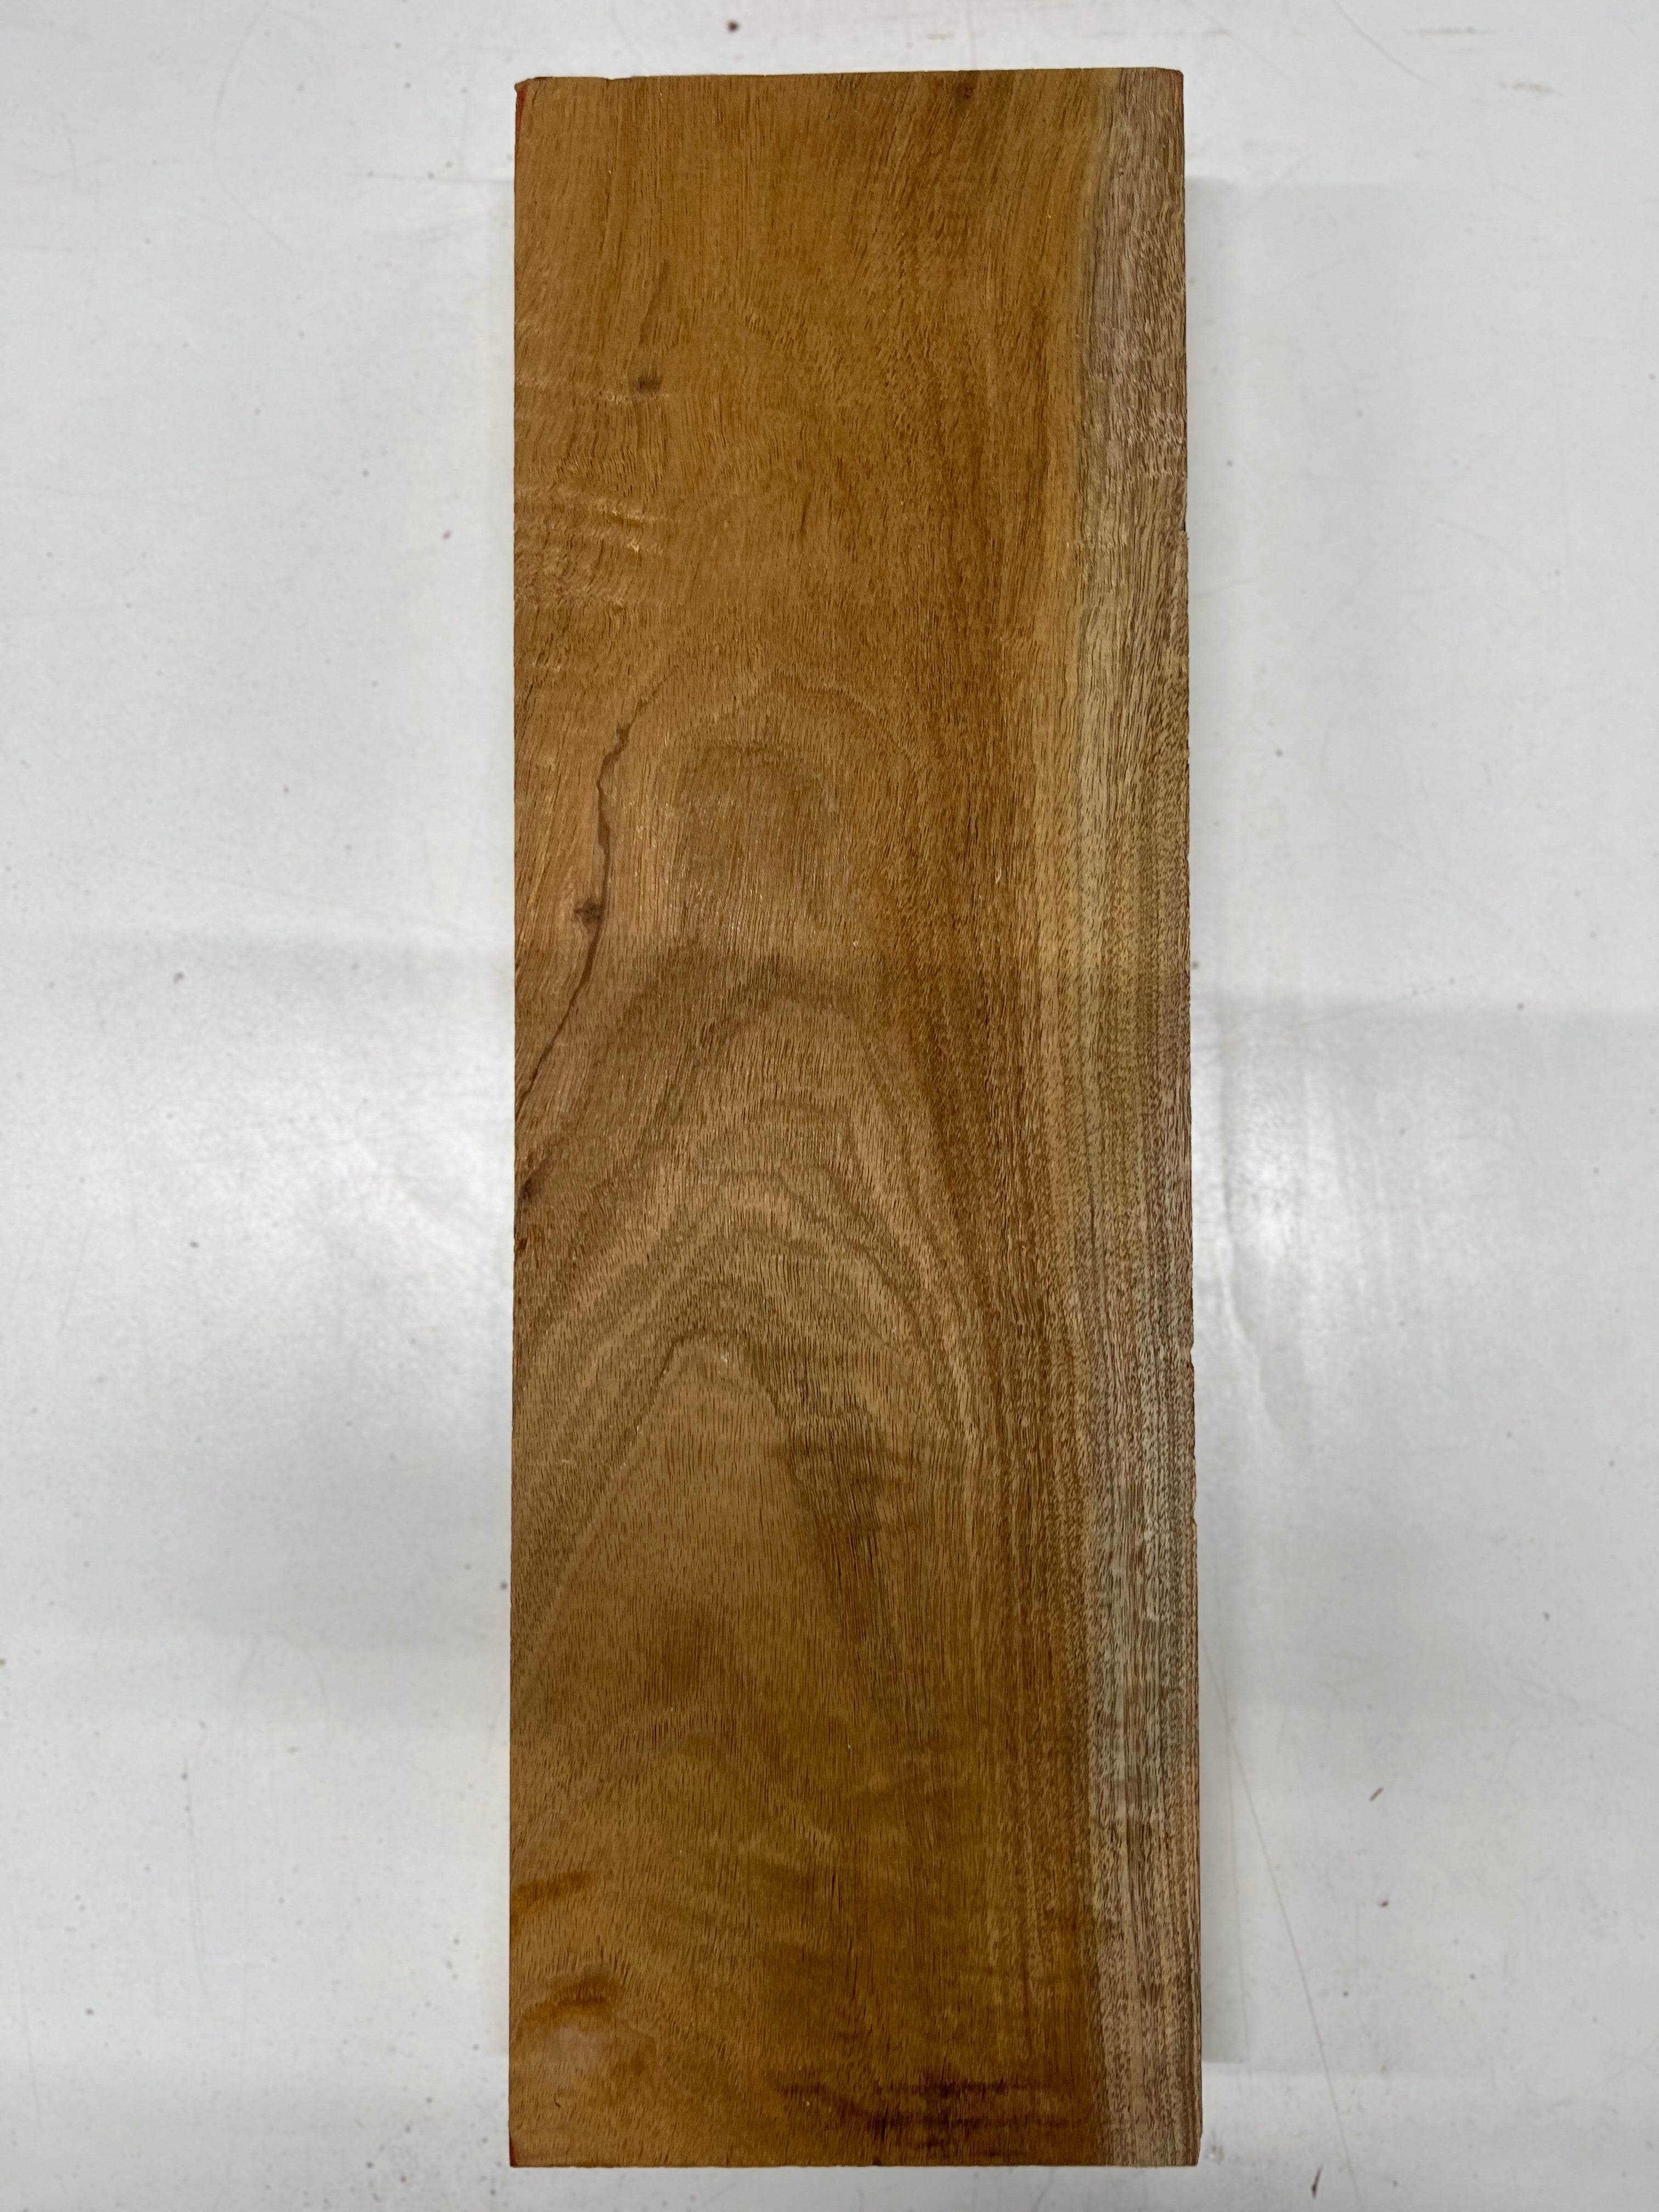 Honduran Mahogany Lumber Board Wood Blank 18&quot;x6&quot;x2&quot; 